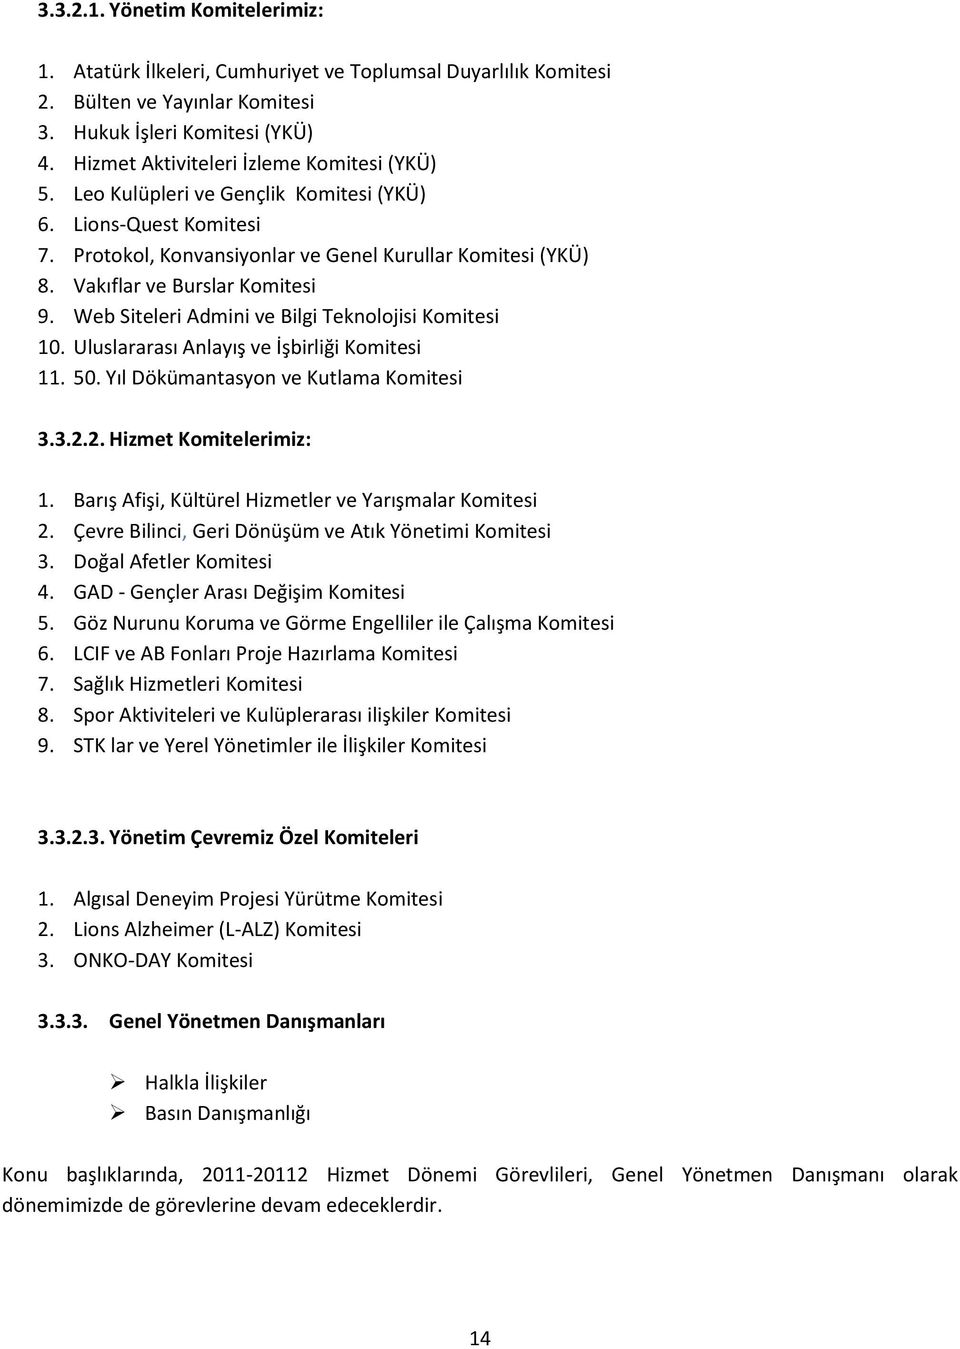 Vakıflar ve Burslar Komitesi 9. Web Siteleri Admini ve Bilgi Teknolojisi Komitesi 10. Uluslararası Anlayış ve İşbirliği Komitesi 11. 50. Yıl Dökümantasyon ve Kutlama Komitesi 3.3.2.